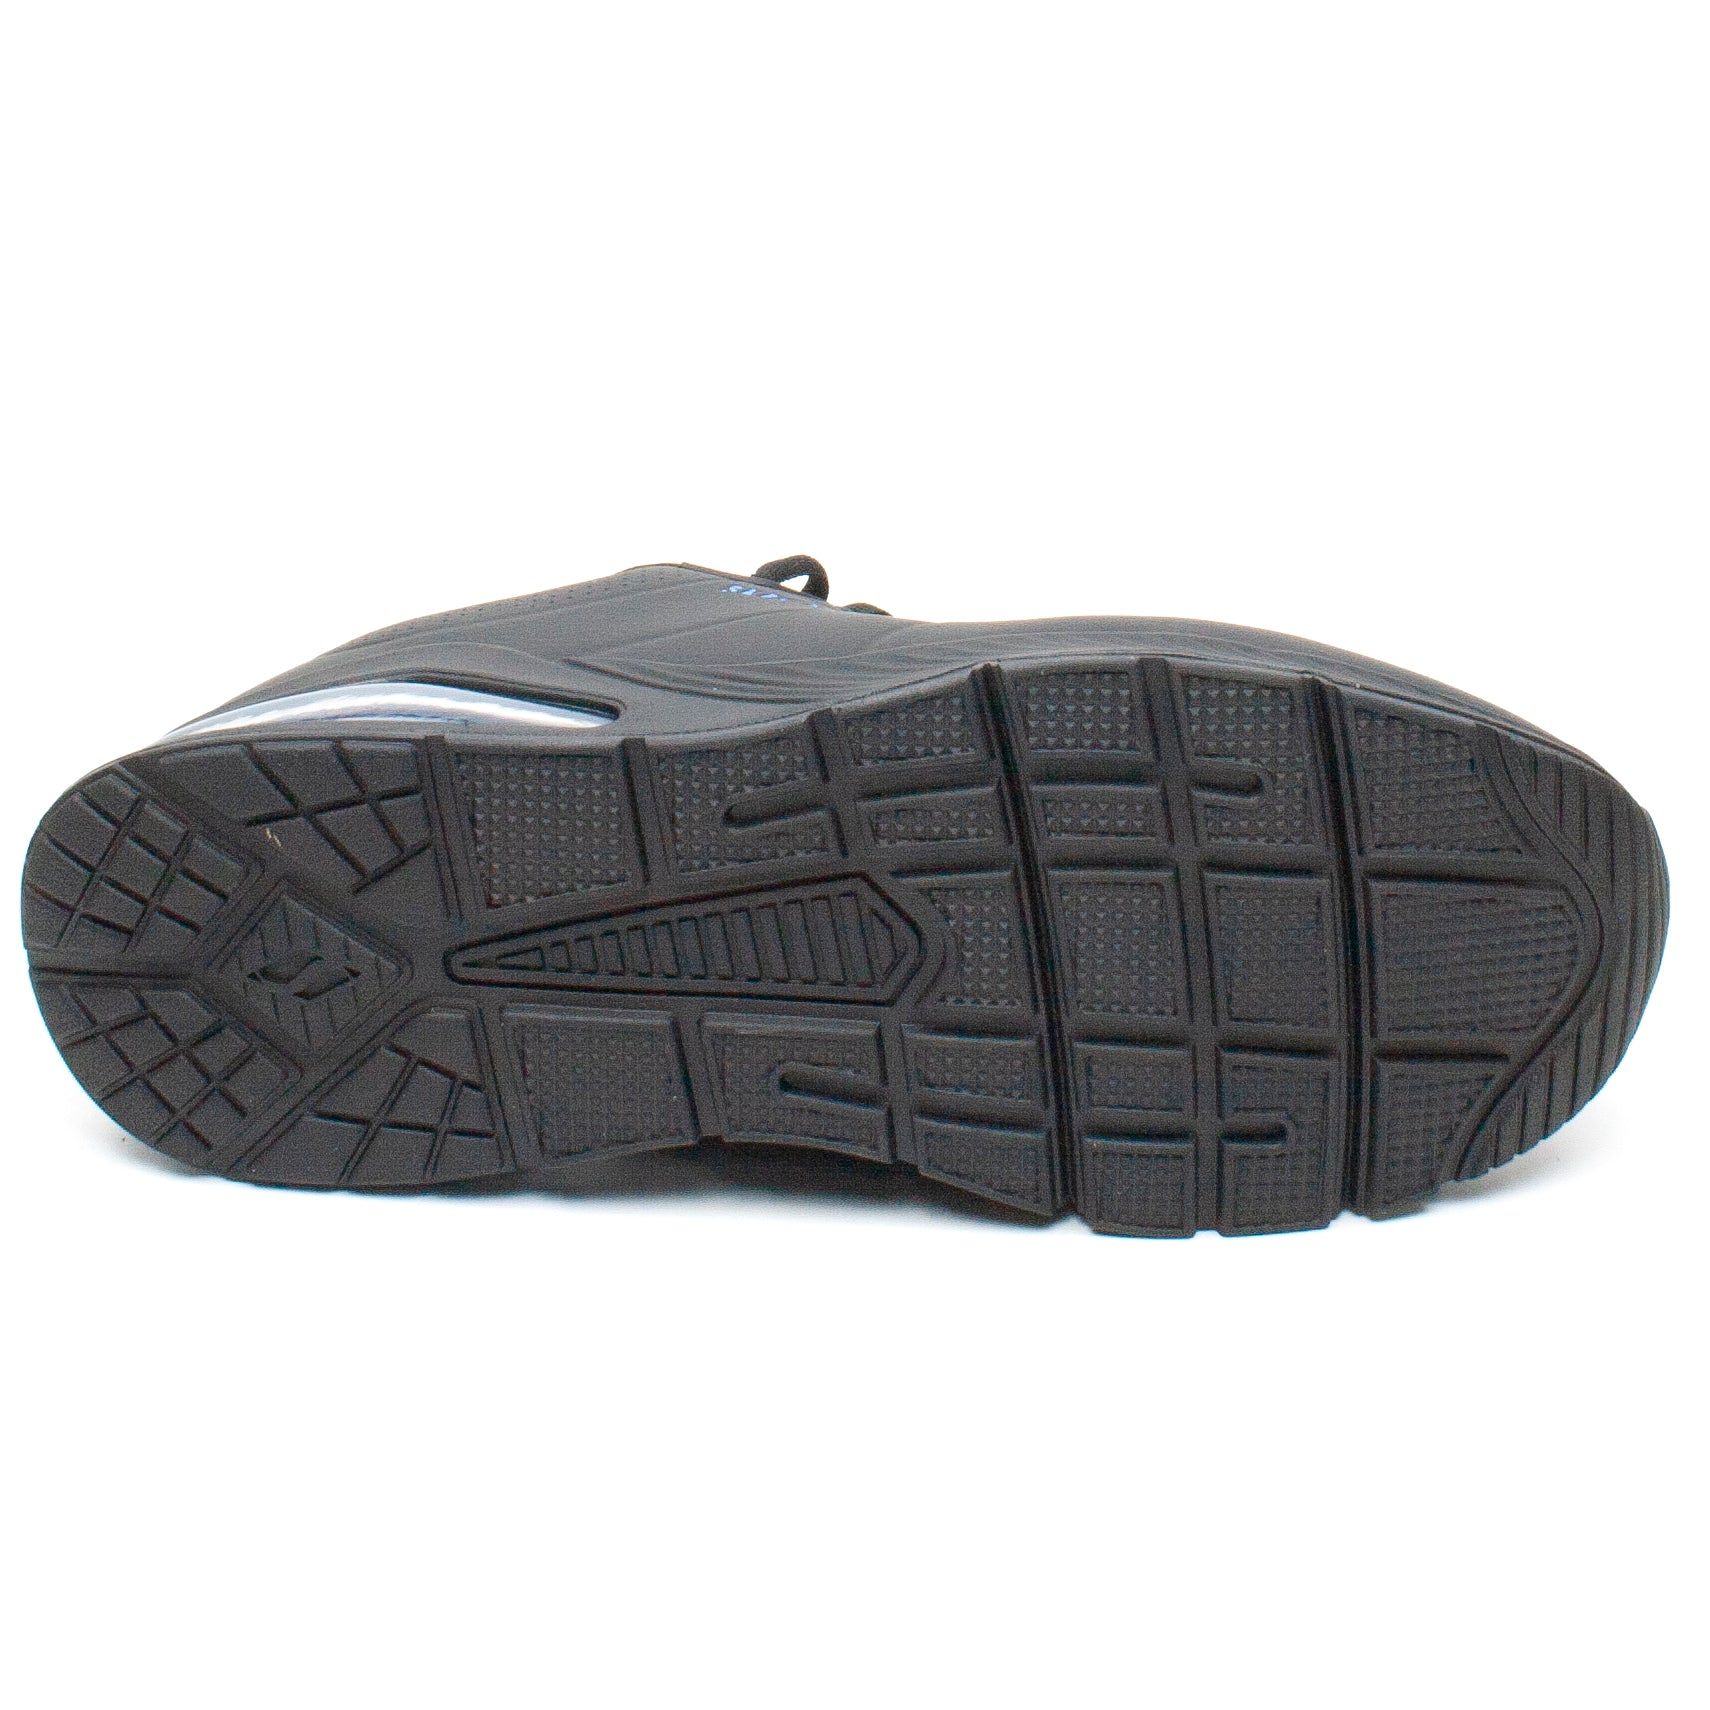 Skechers Pantofi barbati sport 232181 negru IB2197-NG